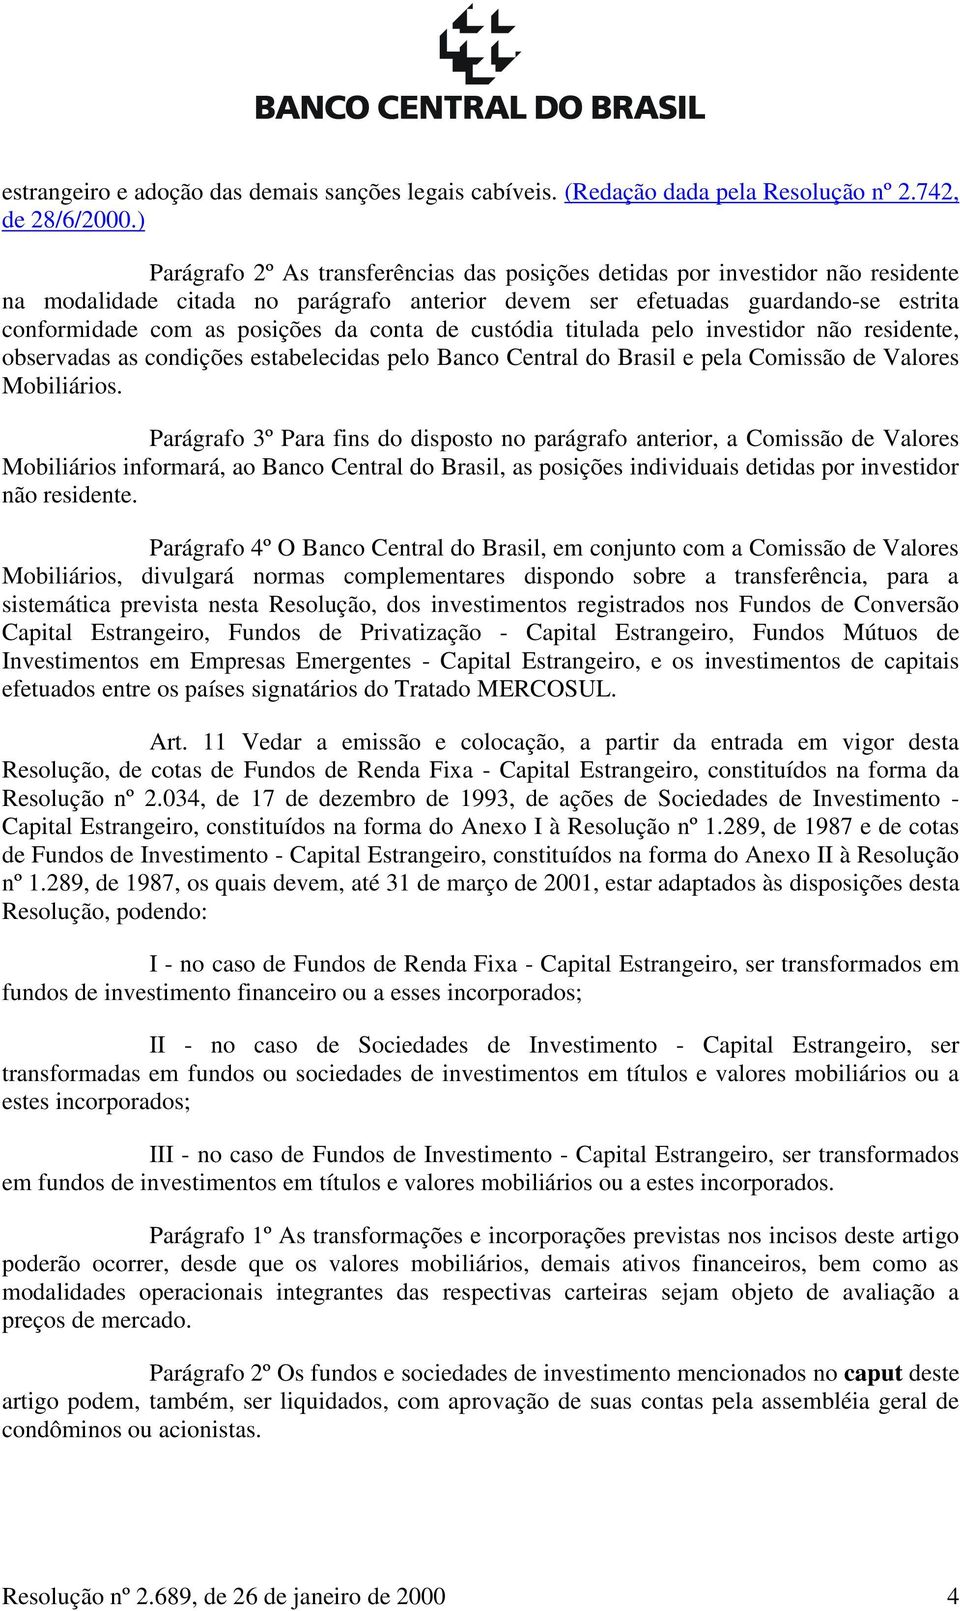 conta de custódia titulada pelo investidor não residente, observadas as condições estabelecidas pelo Banco Central do Brasil e pela Comissão de Valores Mobiliários.